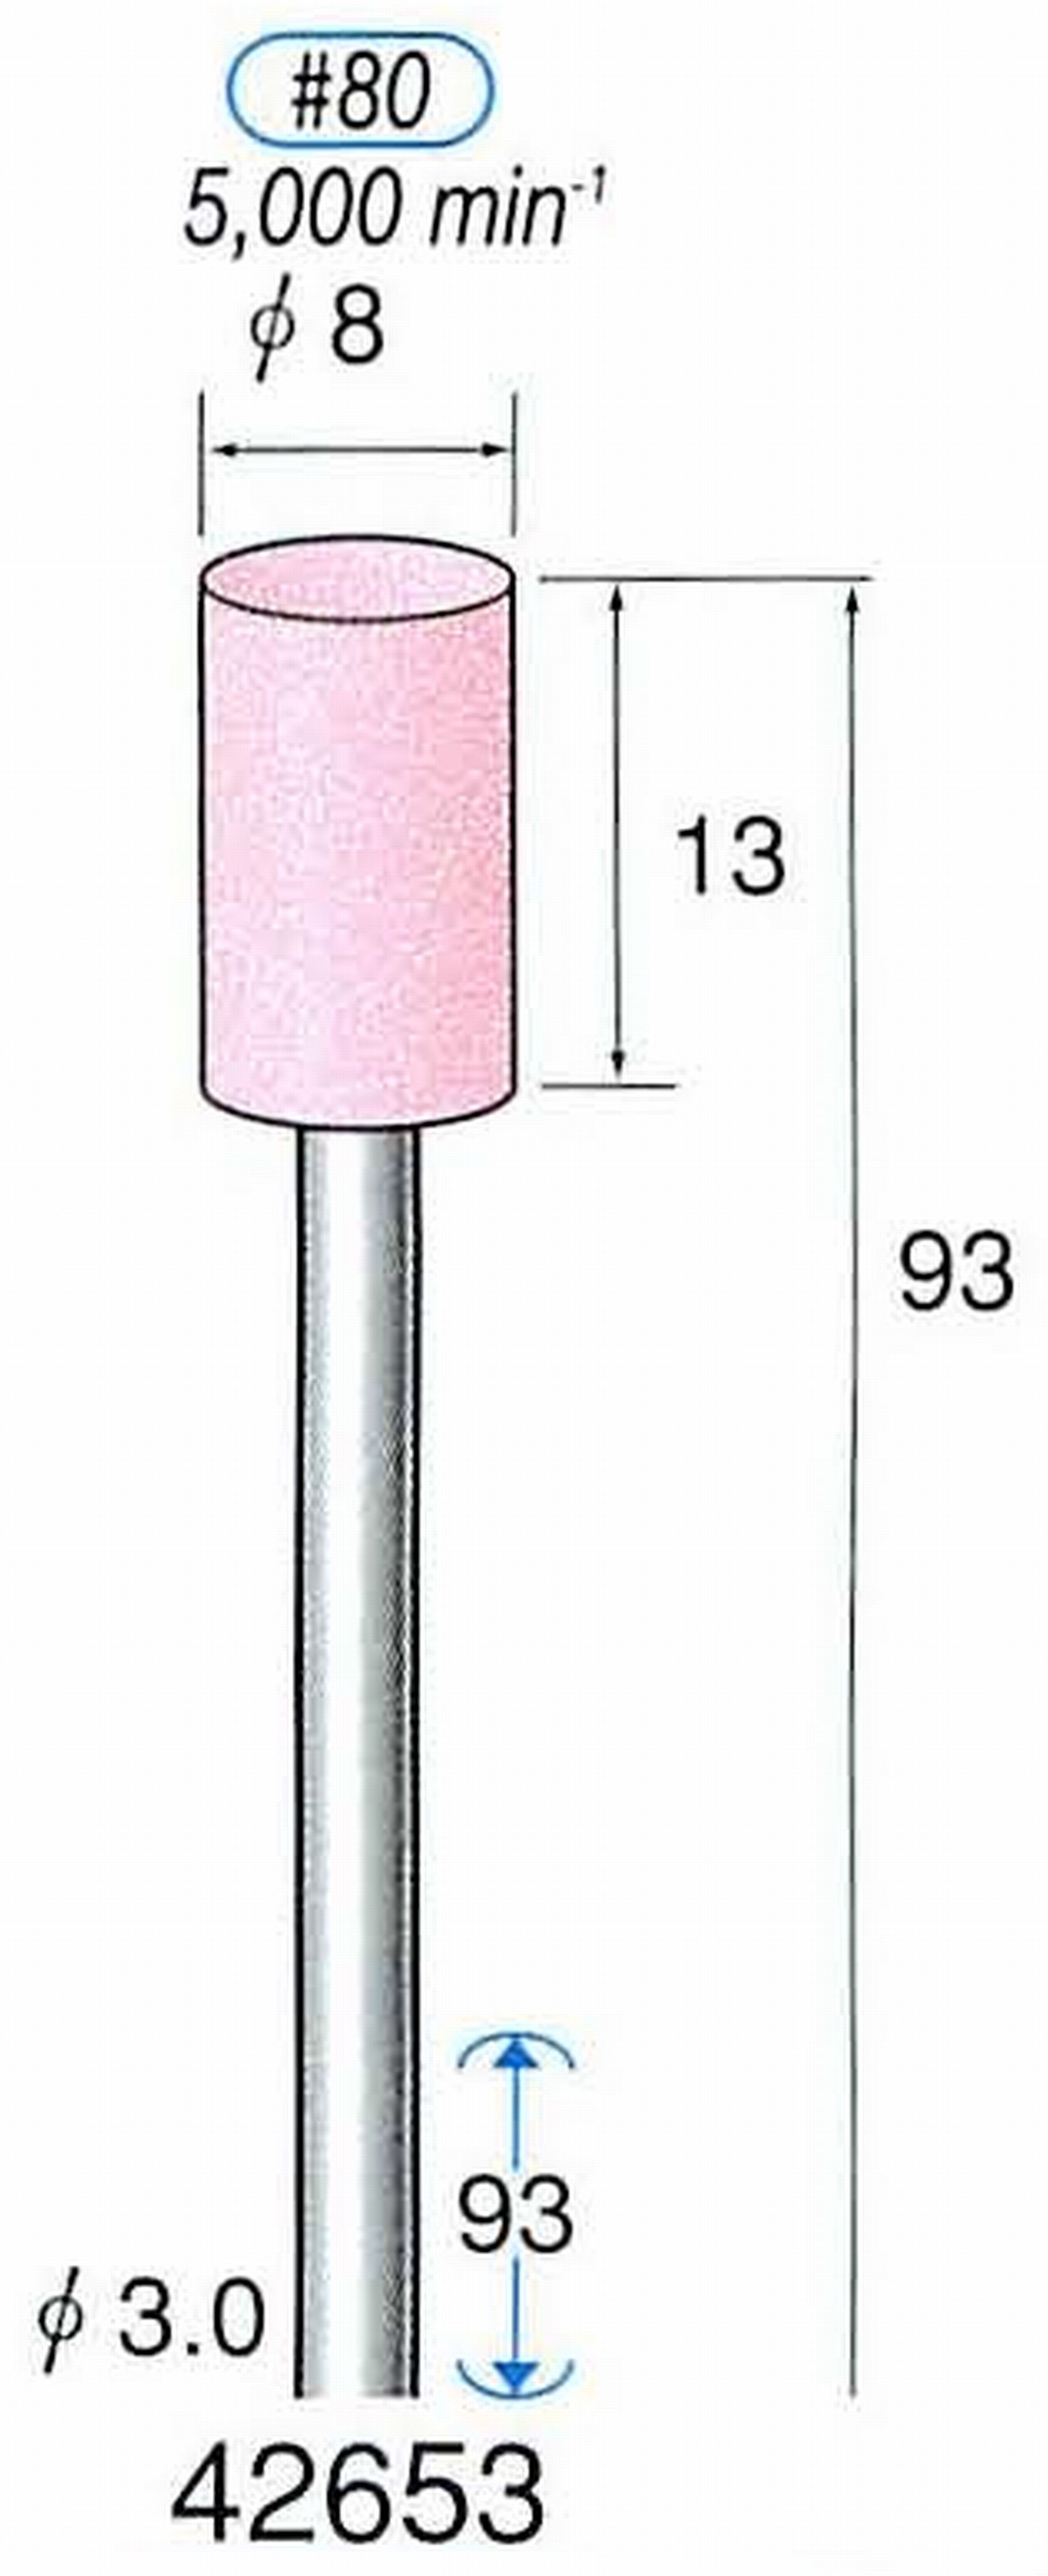 ナカニシ/NAKANISHI 軸付砥石(WA砥粒) 一般研削用(ロングシャフト80mmタイプ) 軸径(シャンク) φ3.0mm 42653